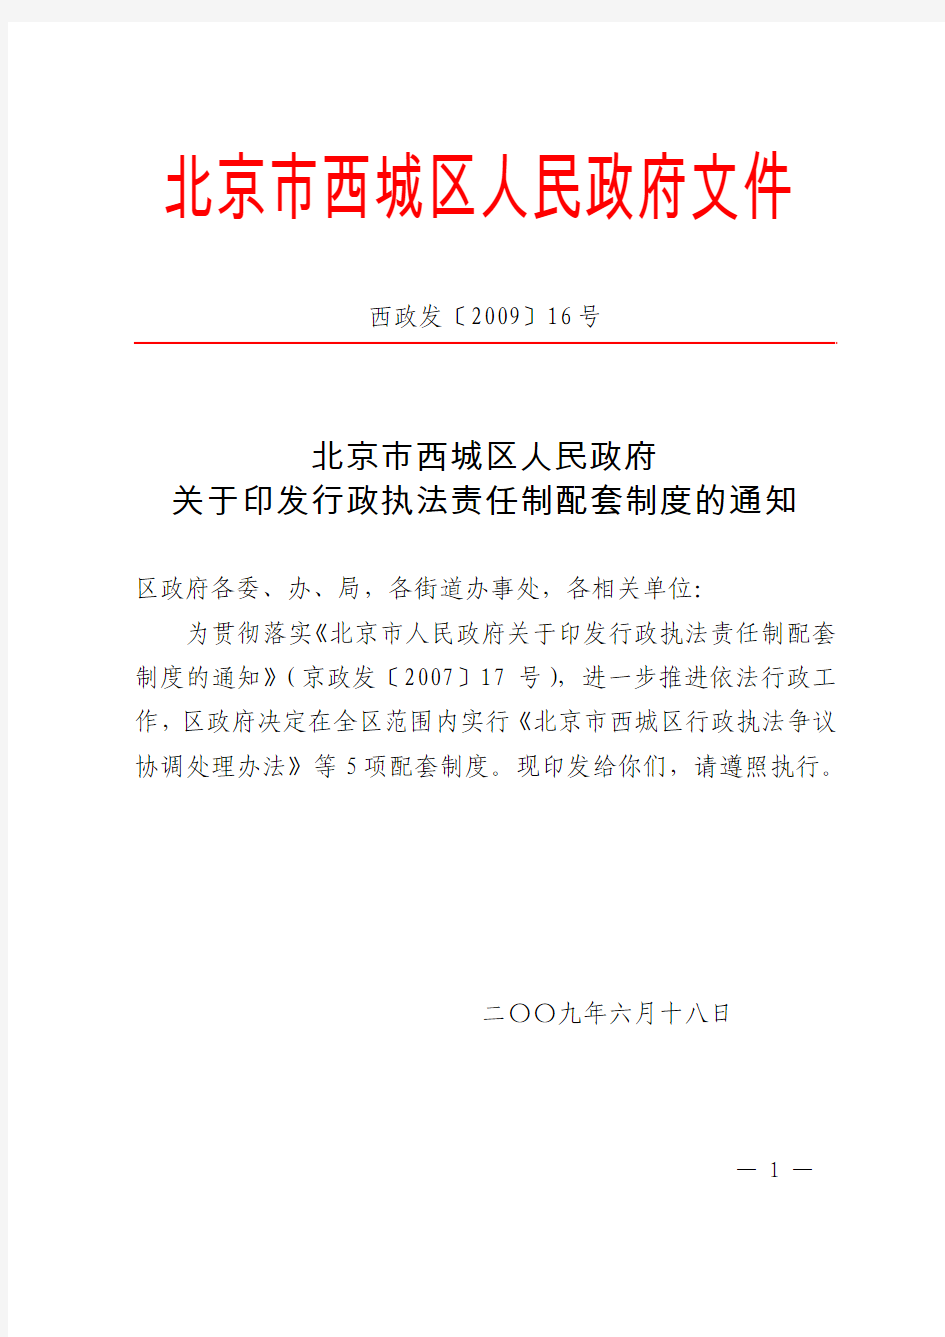 北京市西城区人民政府关于印发行政执法责任制配套制度的通知